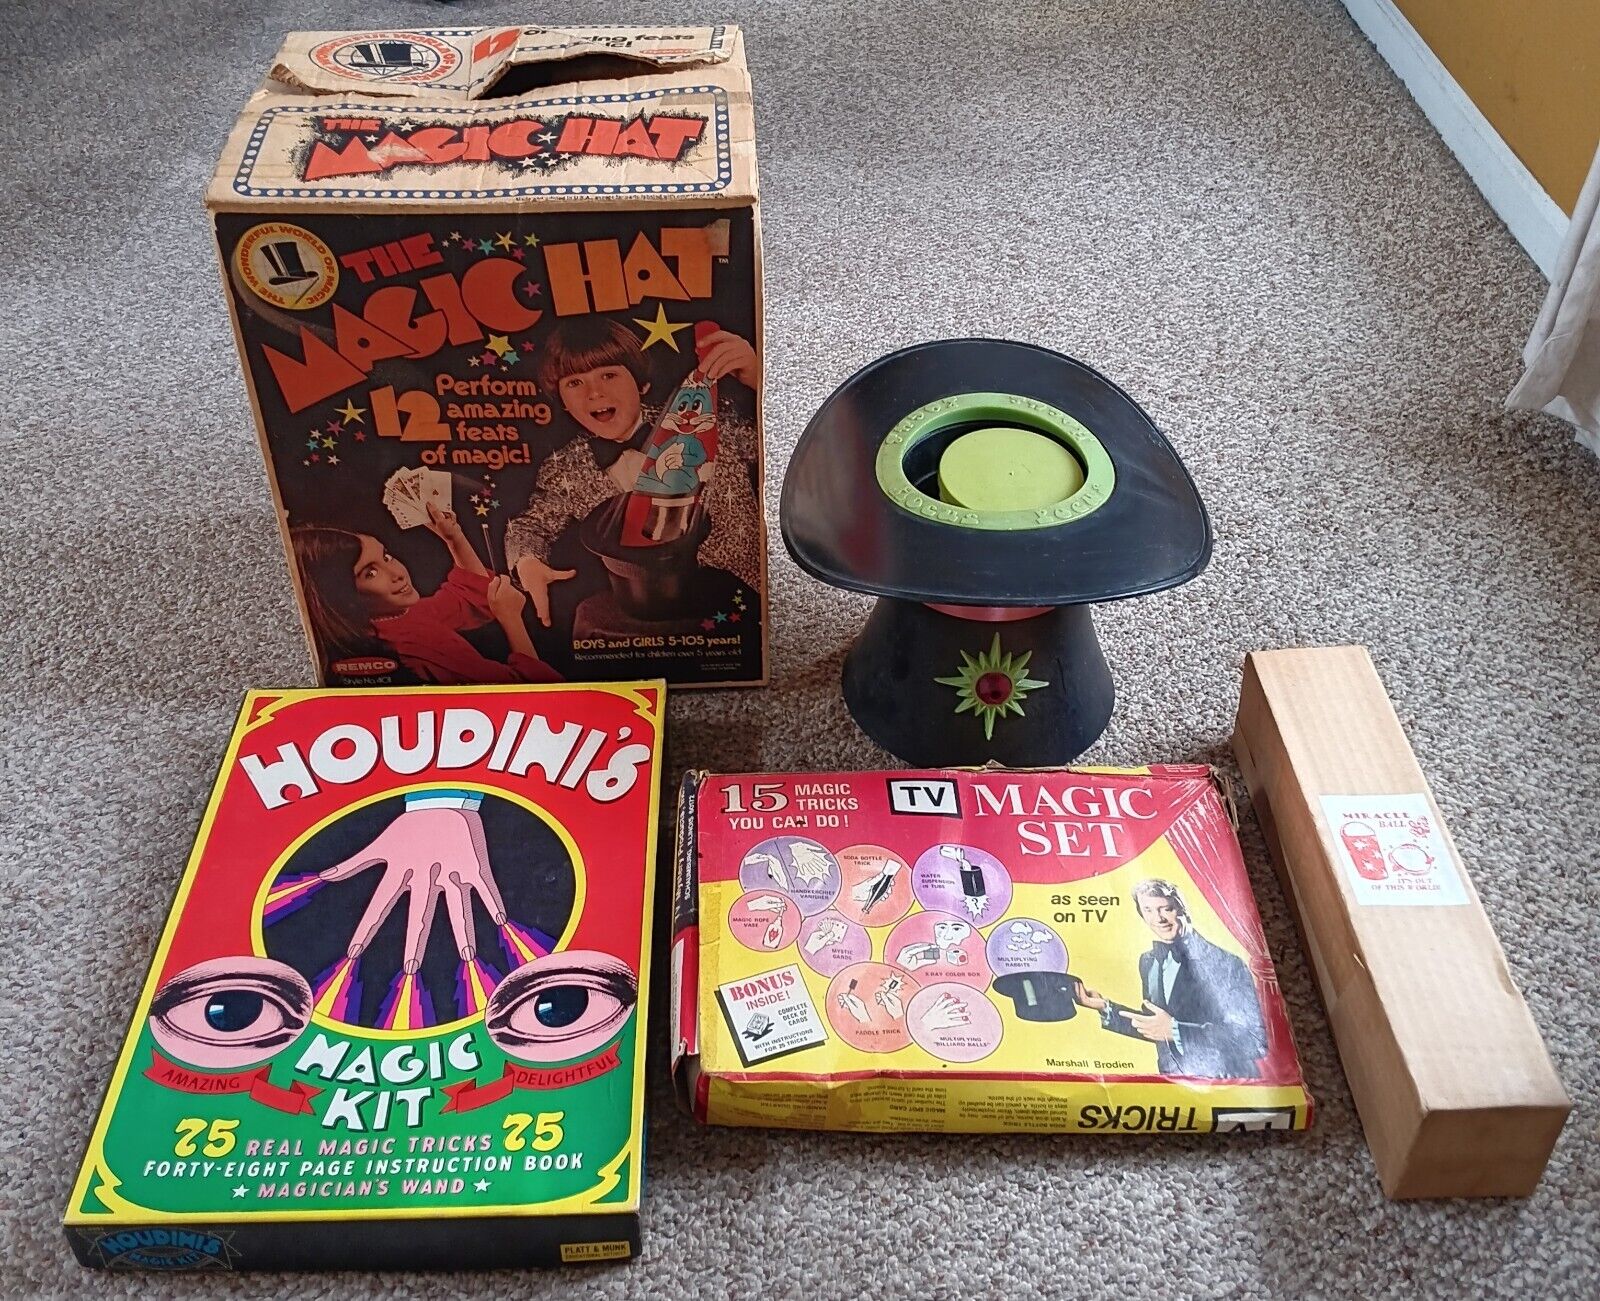 Remco The Magic Hat, Transogram Hocus Pocus Game, Houdini Magic Kit +More Tricks